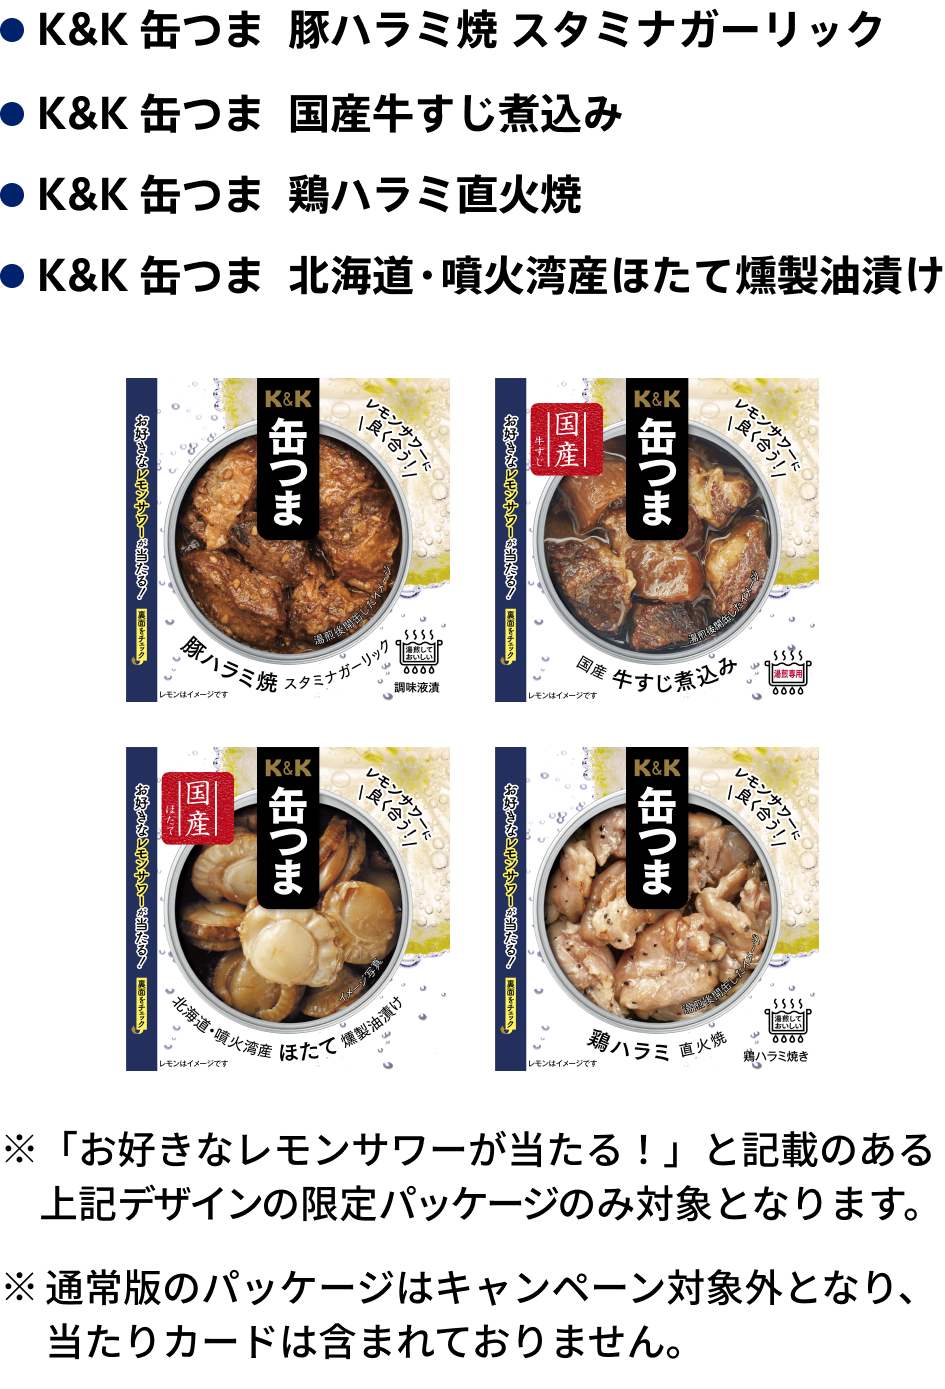 キャンペーン対象商品は「K&K 缶つま 豚ハラミ焼 スタミナガーリック」「K&K 缶つま 国産牛すじ煮込み」「K&K 缶つま 鶏ハラミ直火焼」「K&K 缶つま 北海道・噴火湾産ほたて燻製油漬け」です。「お好きなレモンサワーが当たる！」と記載のあるデザインの限定パッケージのみ対象となります。通常版のパッケージはキャンペーン対象外となり、当たりカードは含まれておりません。